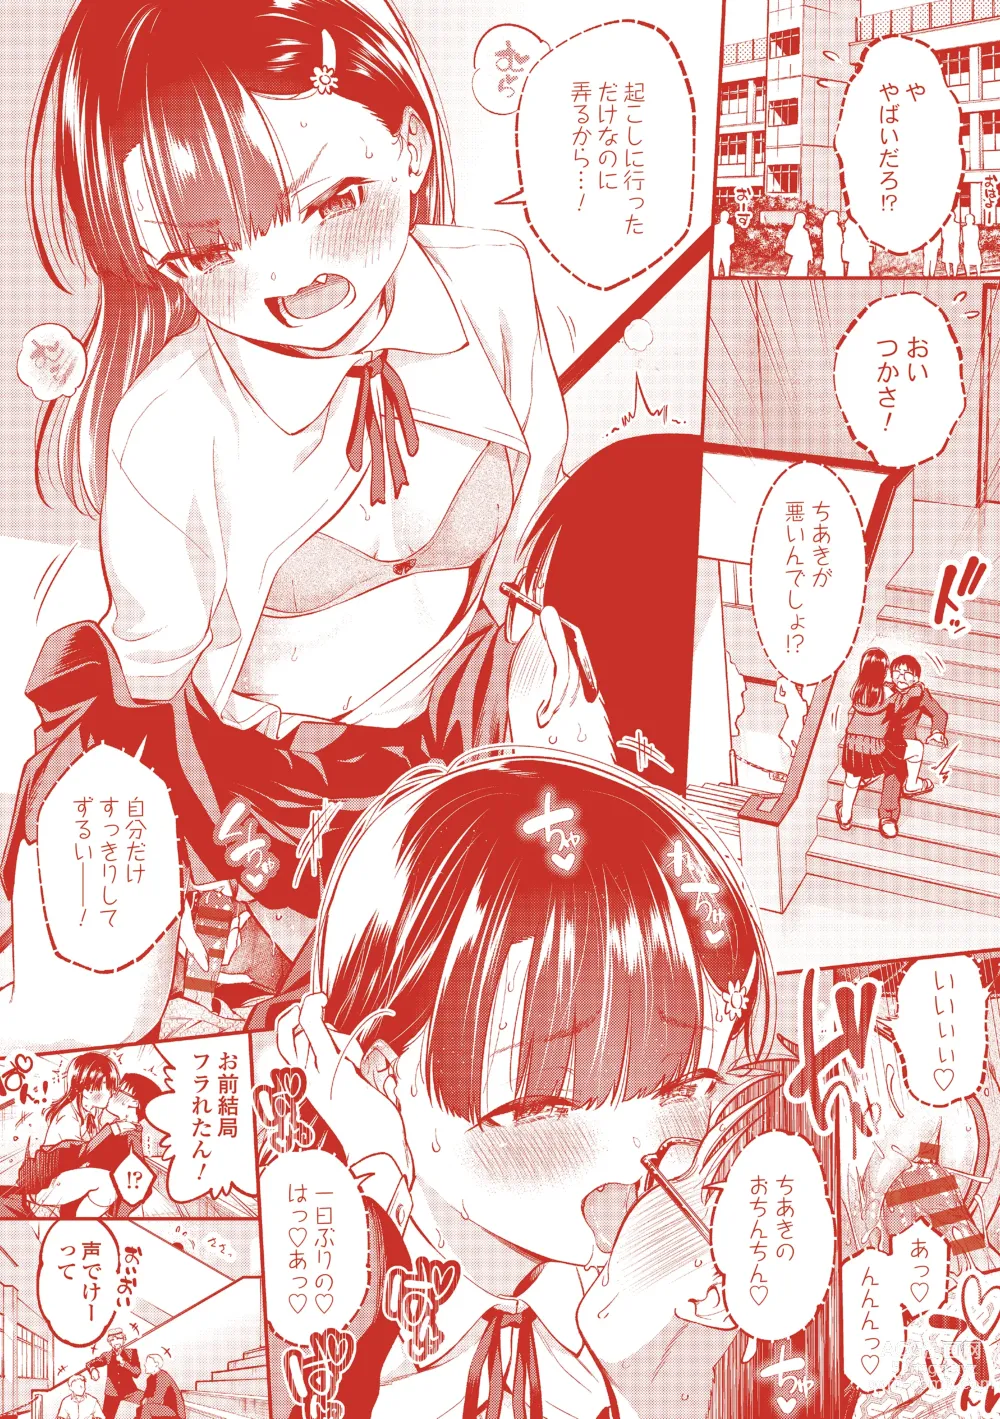 Page 196 of manga Onnanoko ni Shite yo - Make me your first lover.